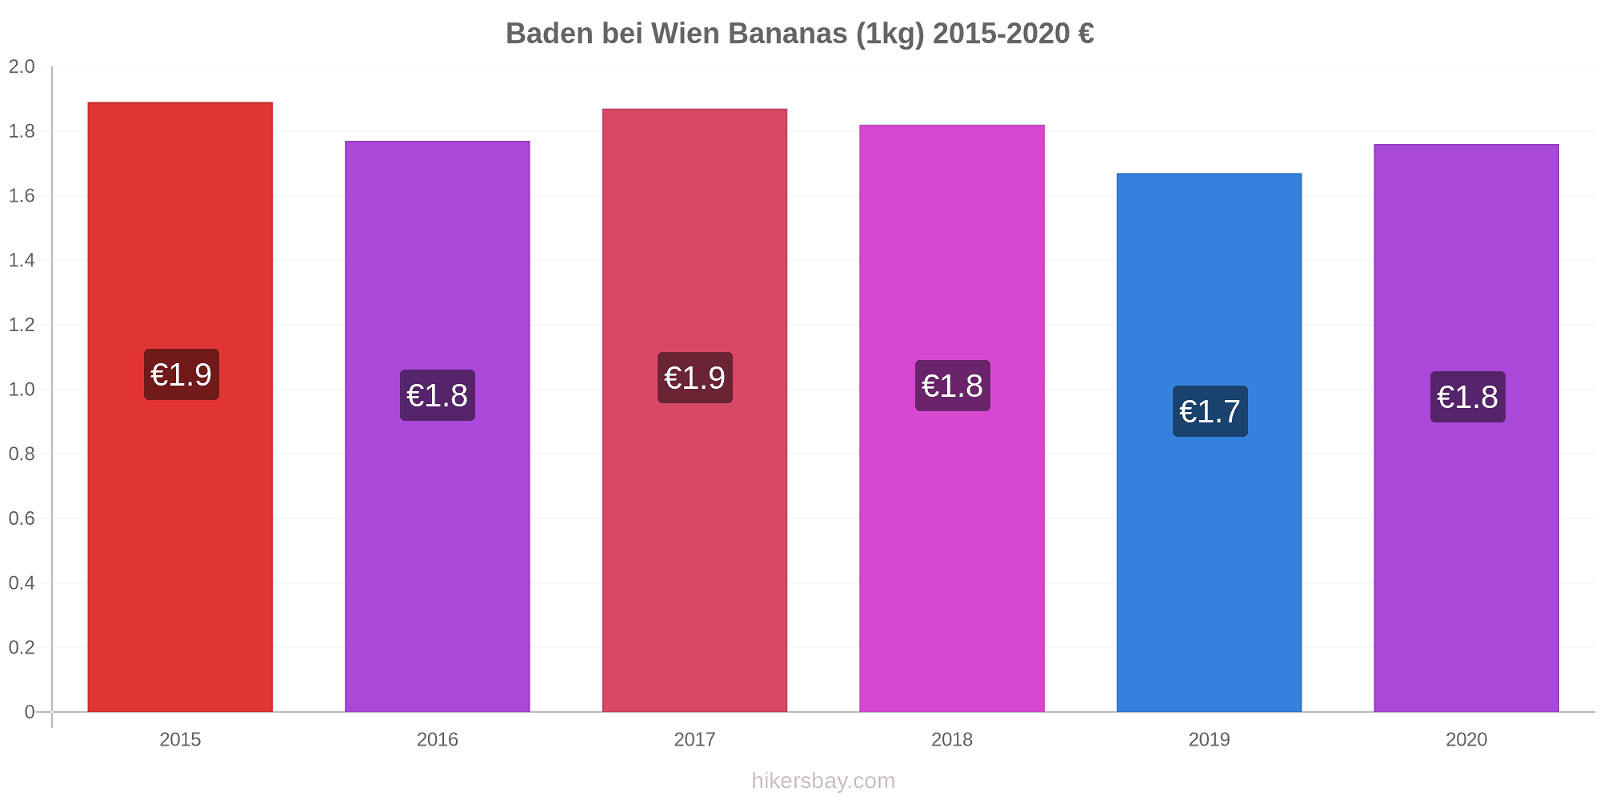 Baden bei Wien price changes Bananas (1kg) hikersbay.com